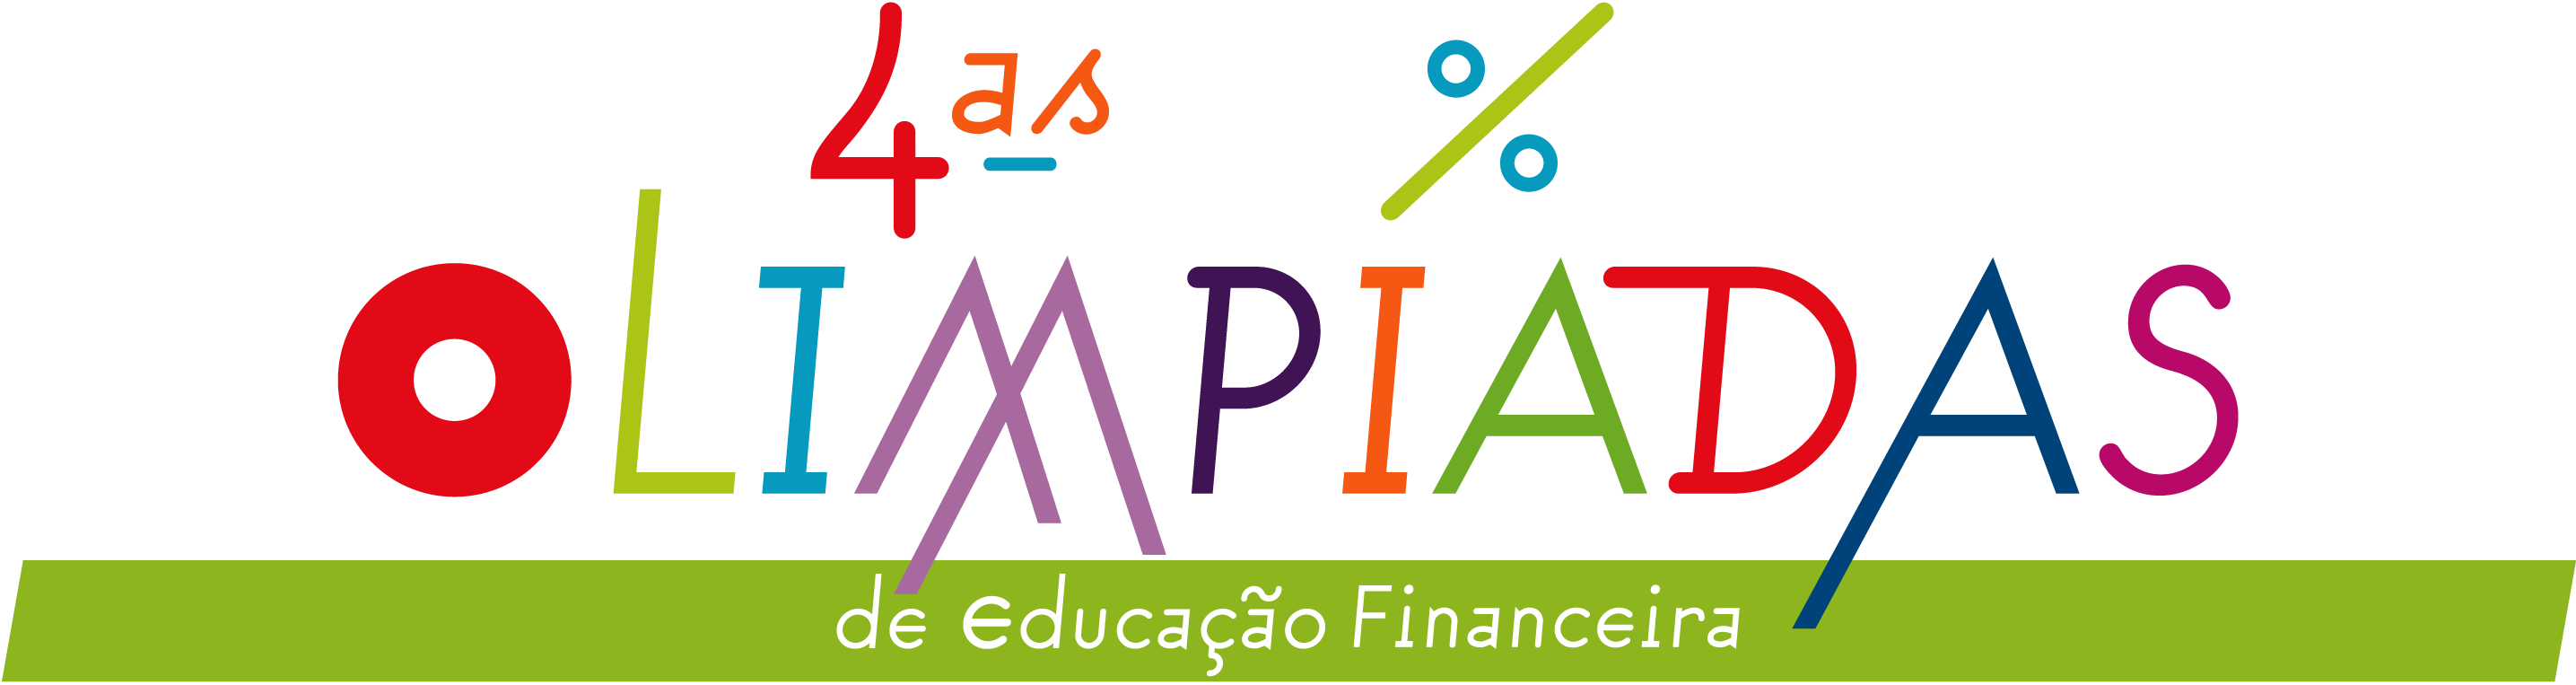 4ª Edição das Olimpíadas de Educação Financeira